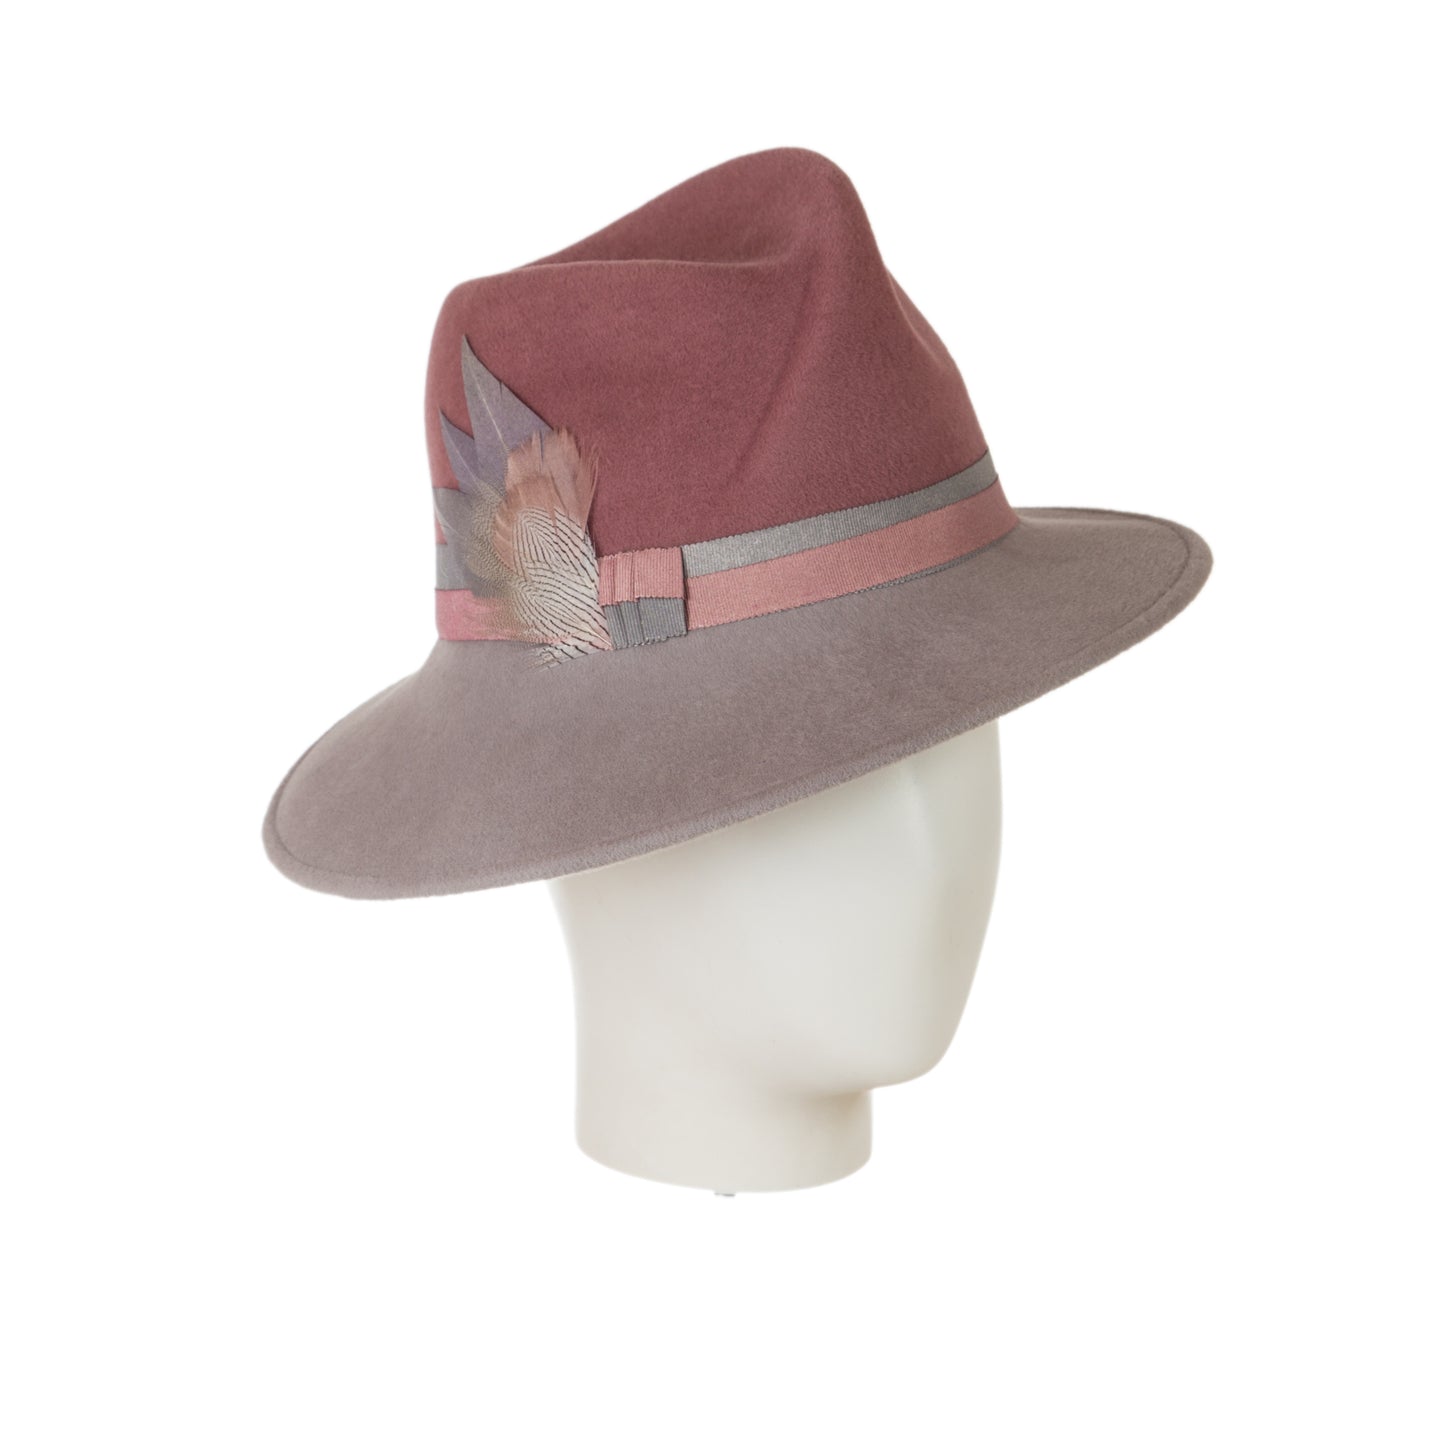 designer trilby hat